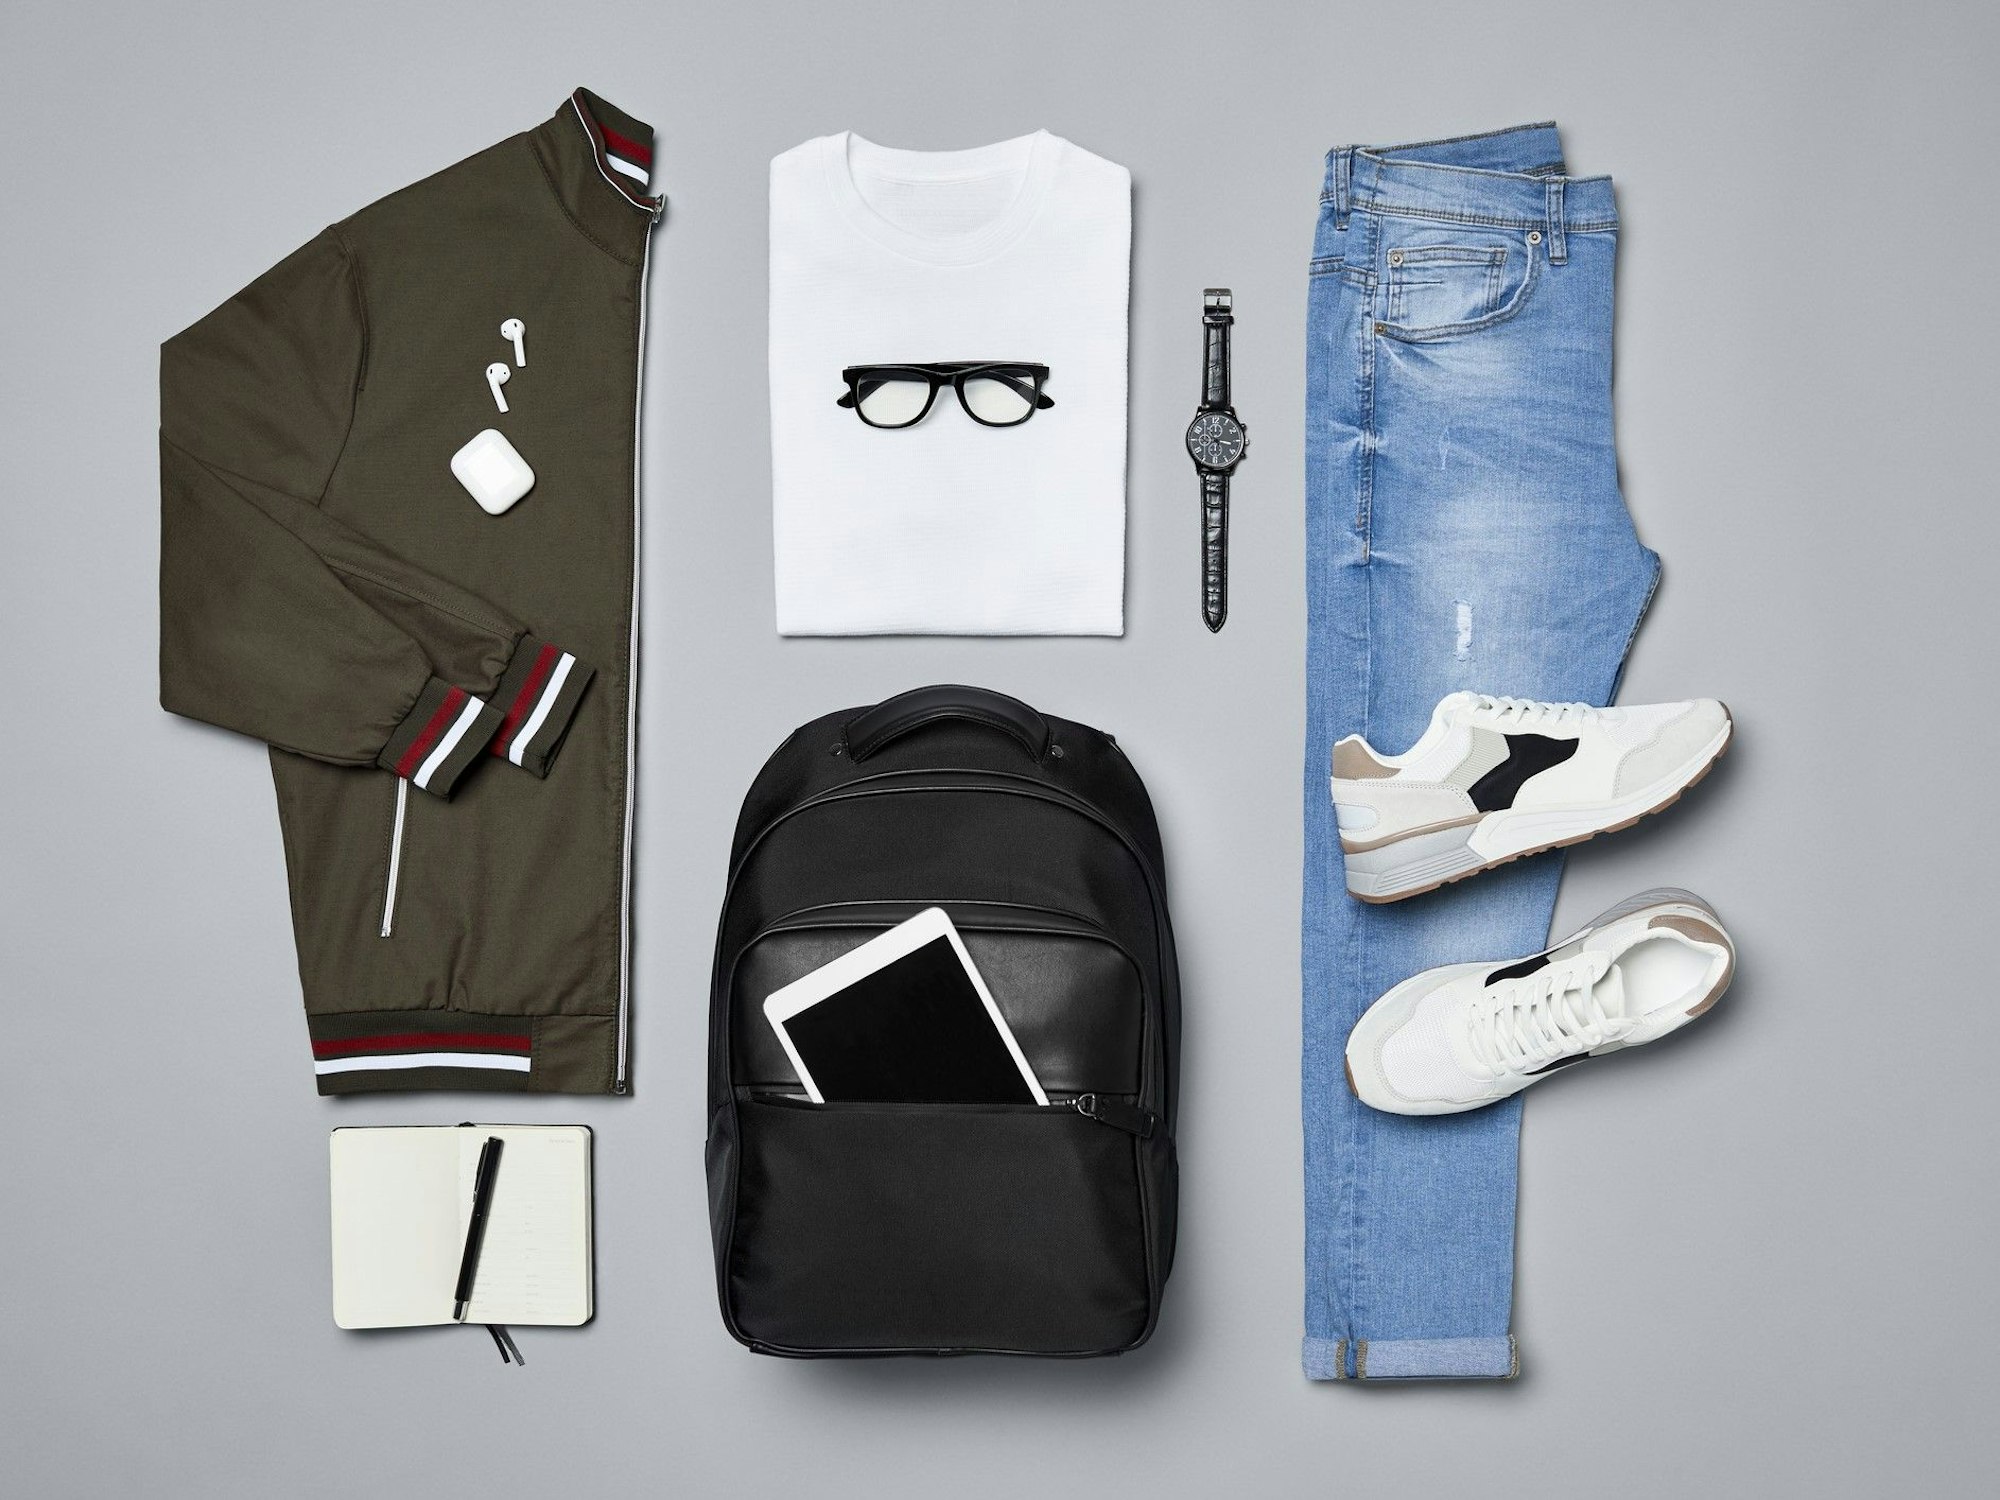 Verschiedene Kleidungsstücke und Accessoires wie eine Jacke, ein T-Shirt, eine Armbanduhr, ein Paar Schuhe, eine Jeans, ein Rucksack und ein iPad, ein Notizblock und ein Kugelschreiber liegen auf einem grauen Untergrund.